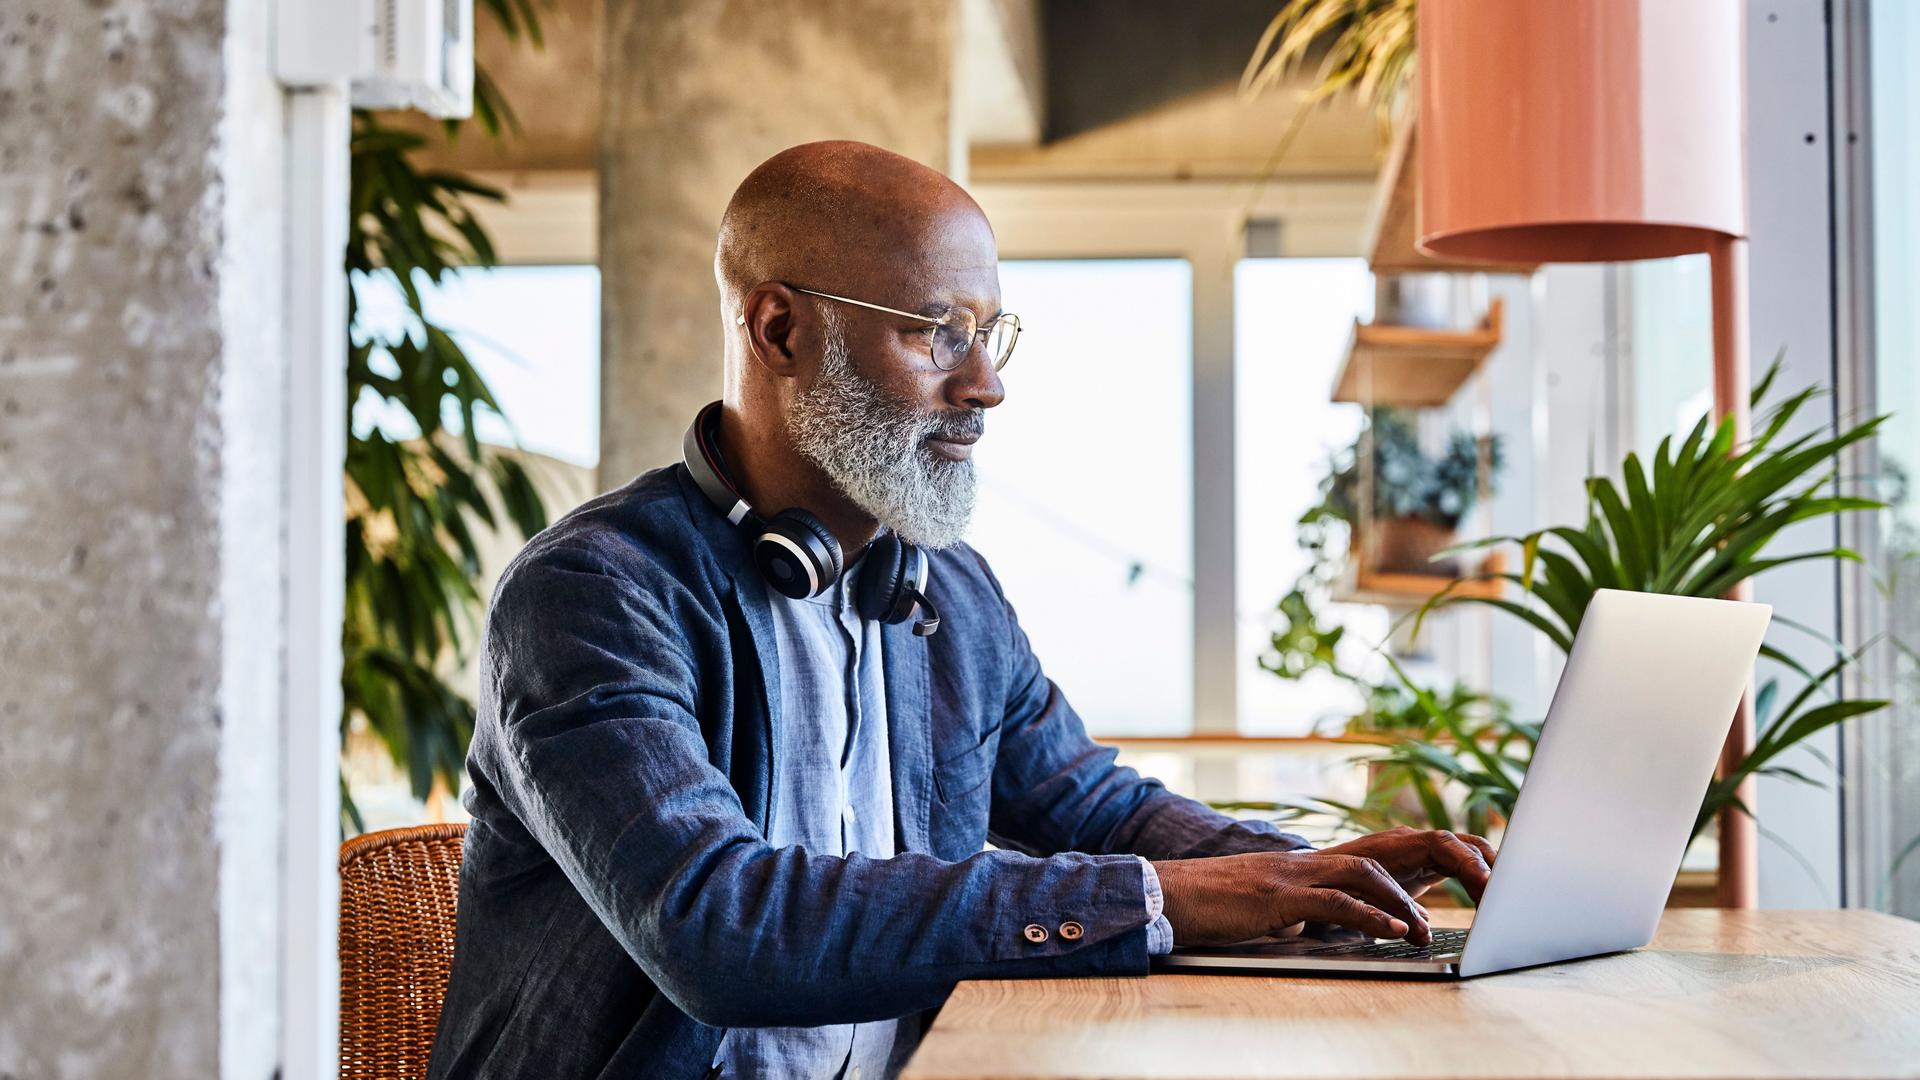 Mann mittleren Alters, der an einem Holztisch sitzt und an einem Laptop arbeitet. Im Hintergrund sind viele Pflanzen.